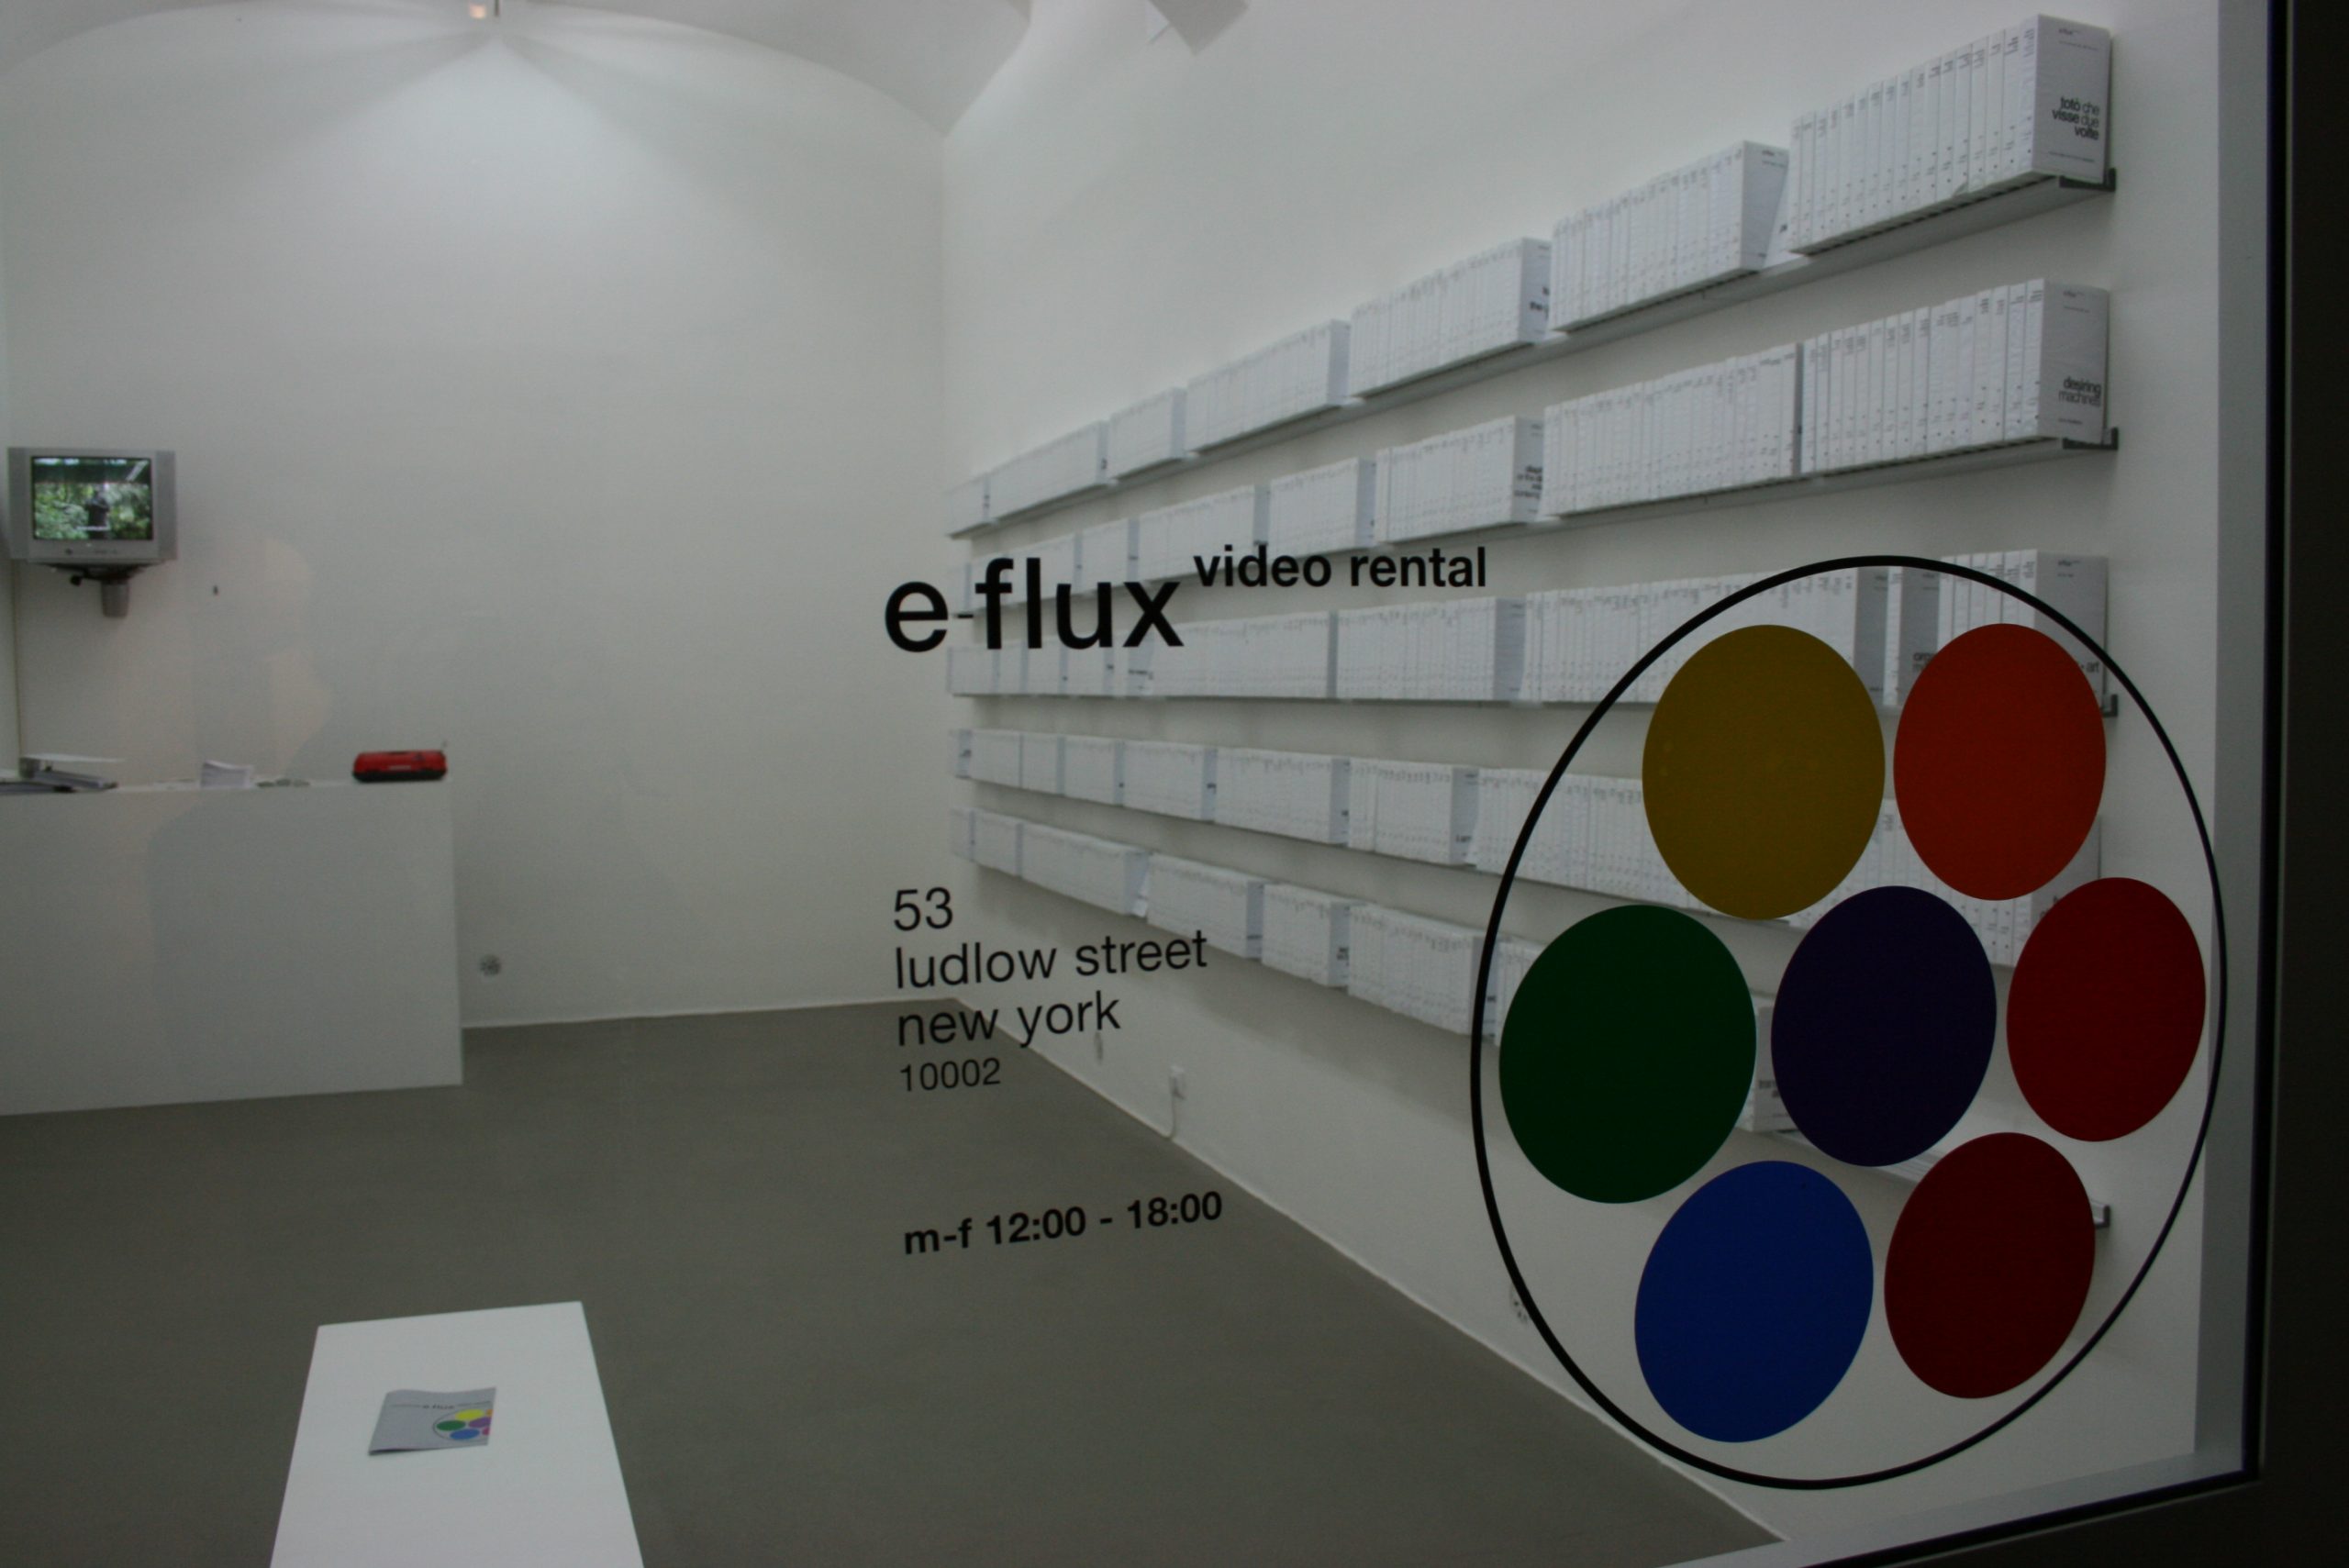 e-flux video rental, Anton Vidokle & Julieta Aranda
Fondazione Giuliani, Roma, 2010, veduta dell’installazione, particolare